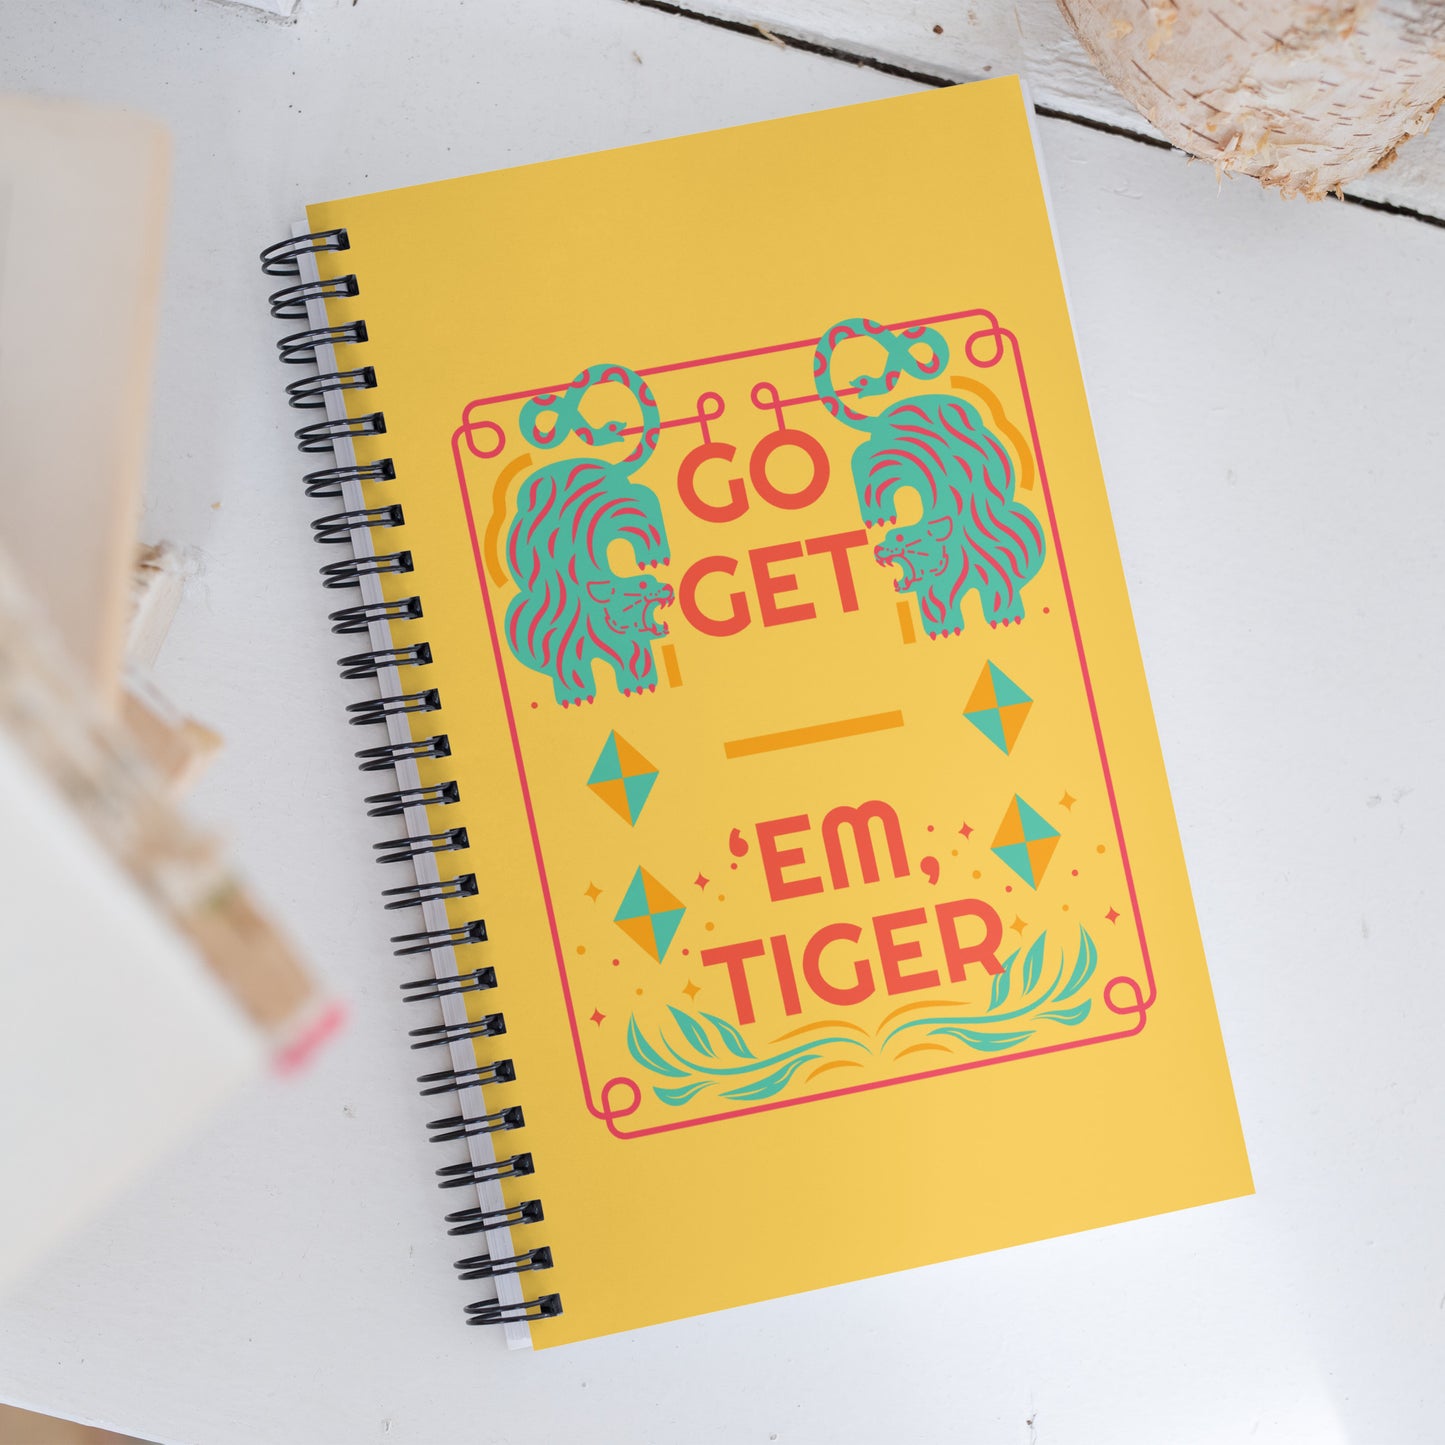 "Go Get 'Em, Tiger" | Spiral Notebook